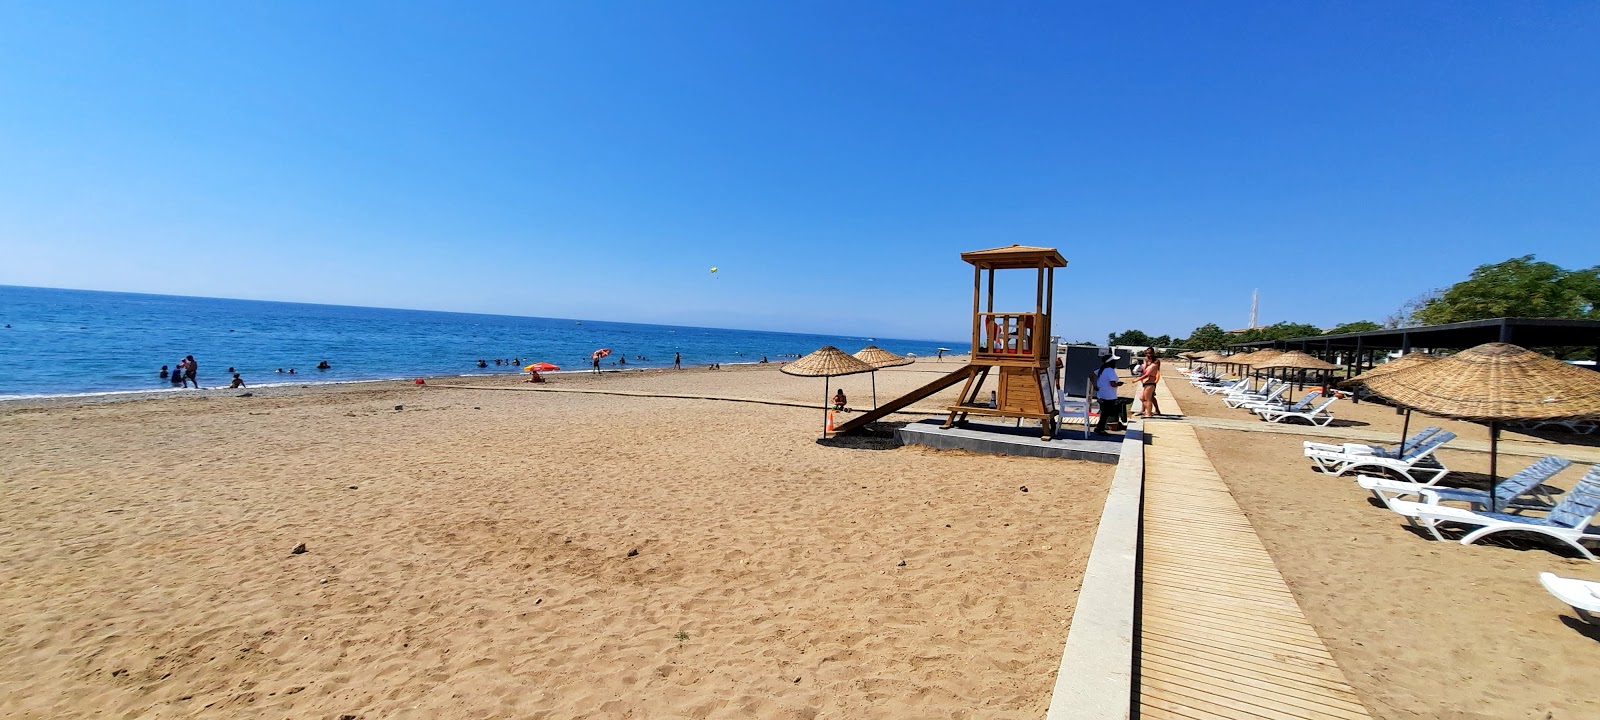 Zdjęcie Belek beach II z powierzchnią brązowy piasek